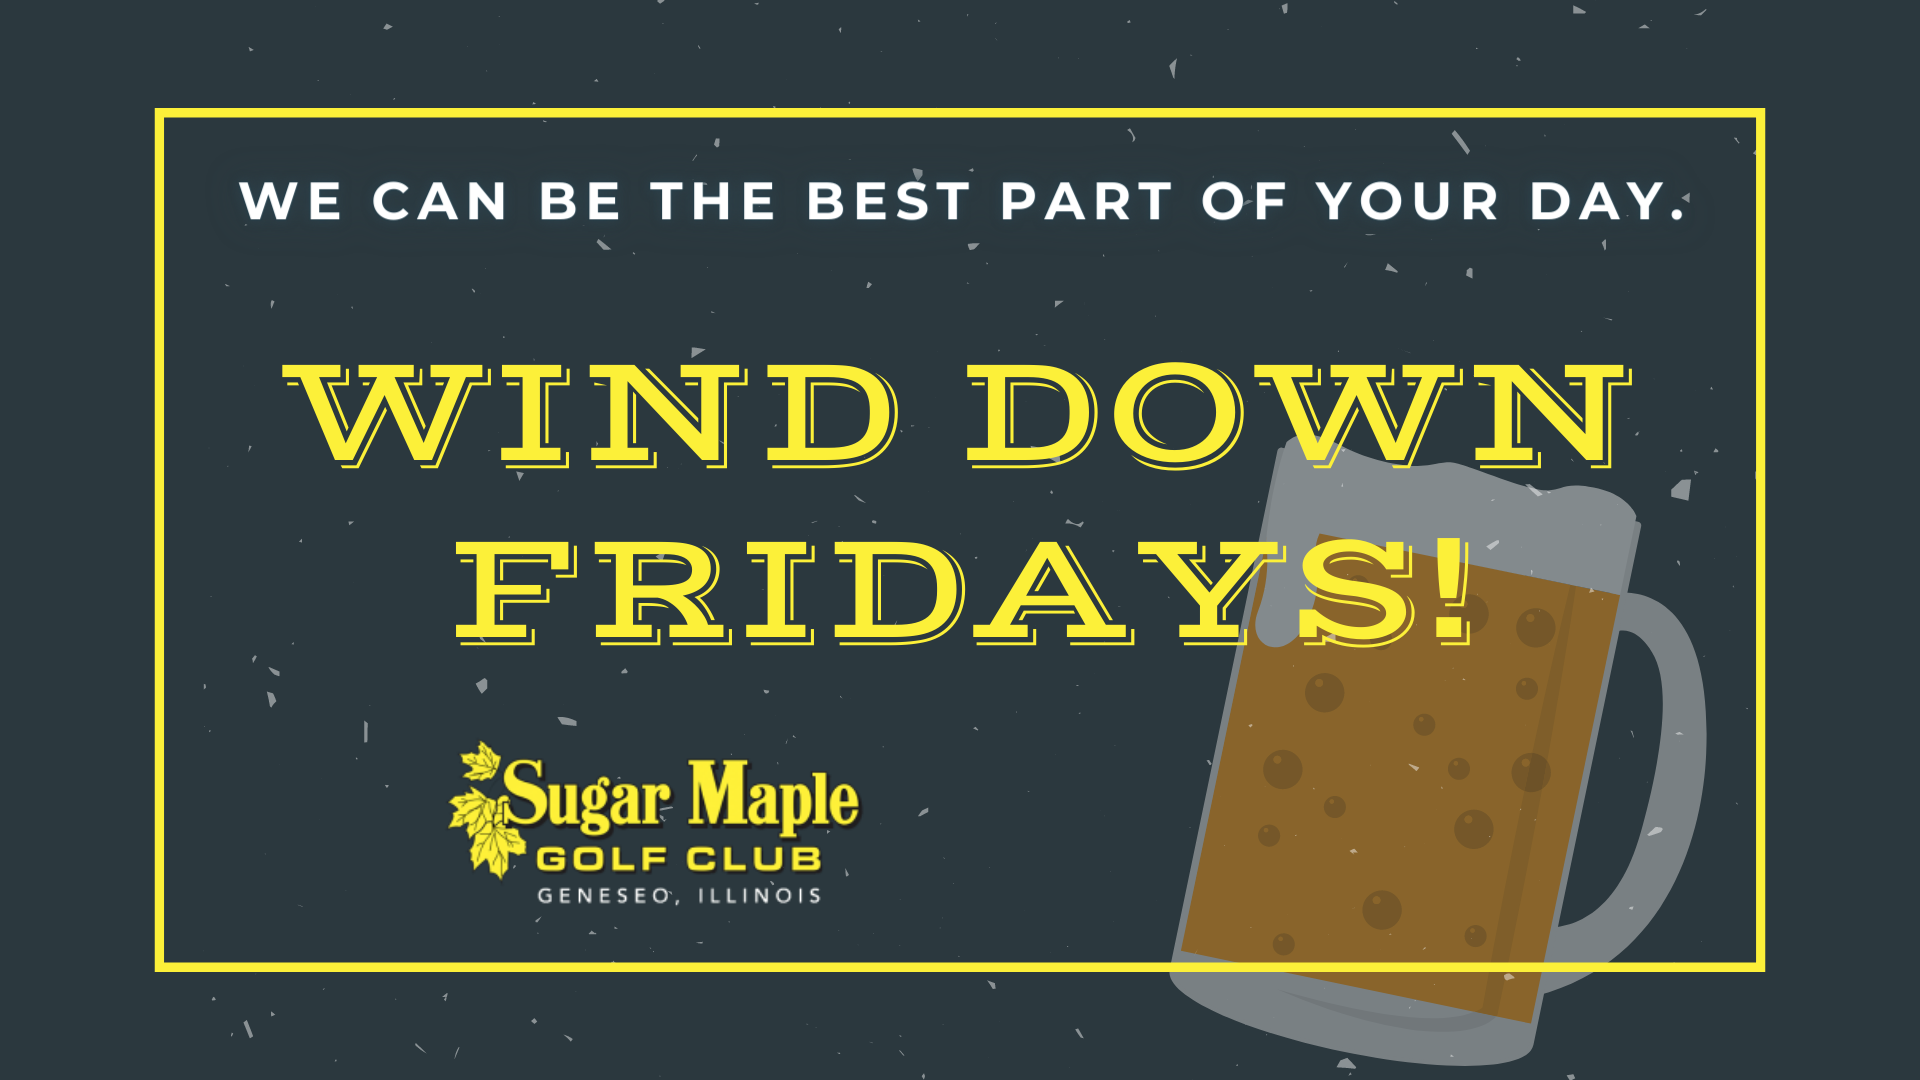 Sugar Maple Wind Down Fridays 99 fb event